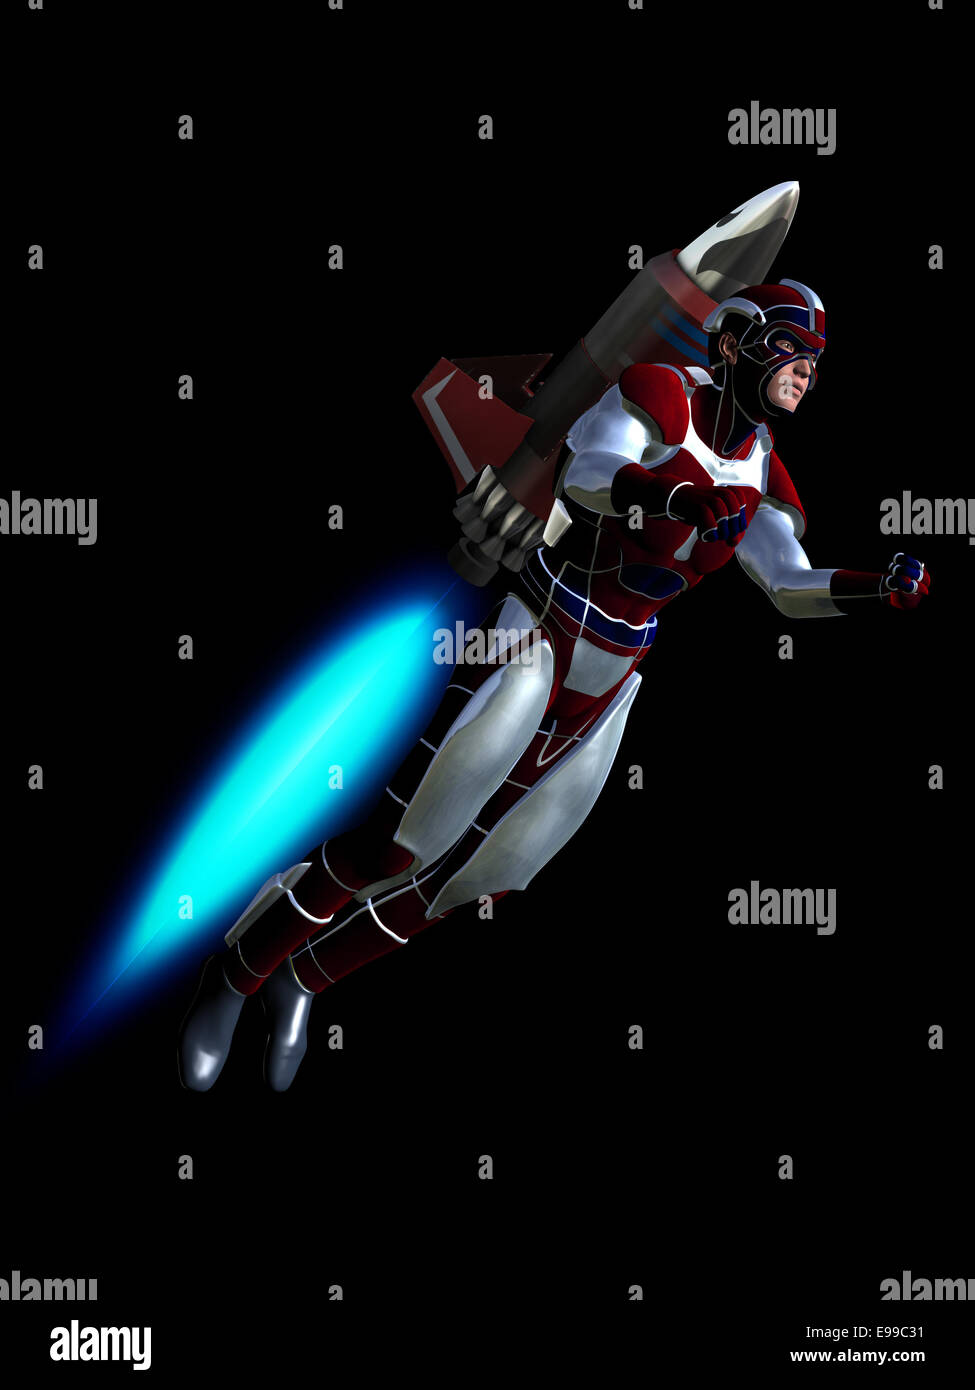 Prestados ilustración representando hero usando rocket pack para volar Foto de stock